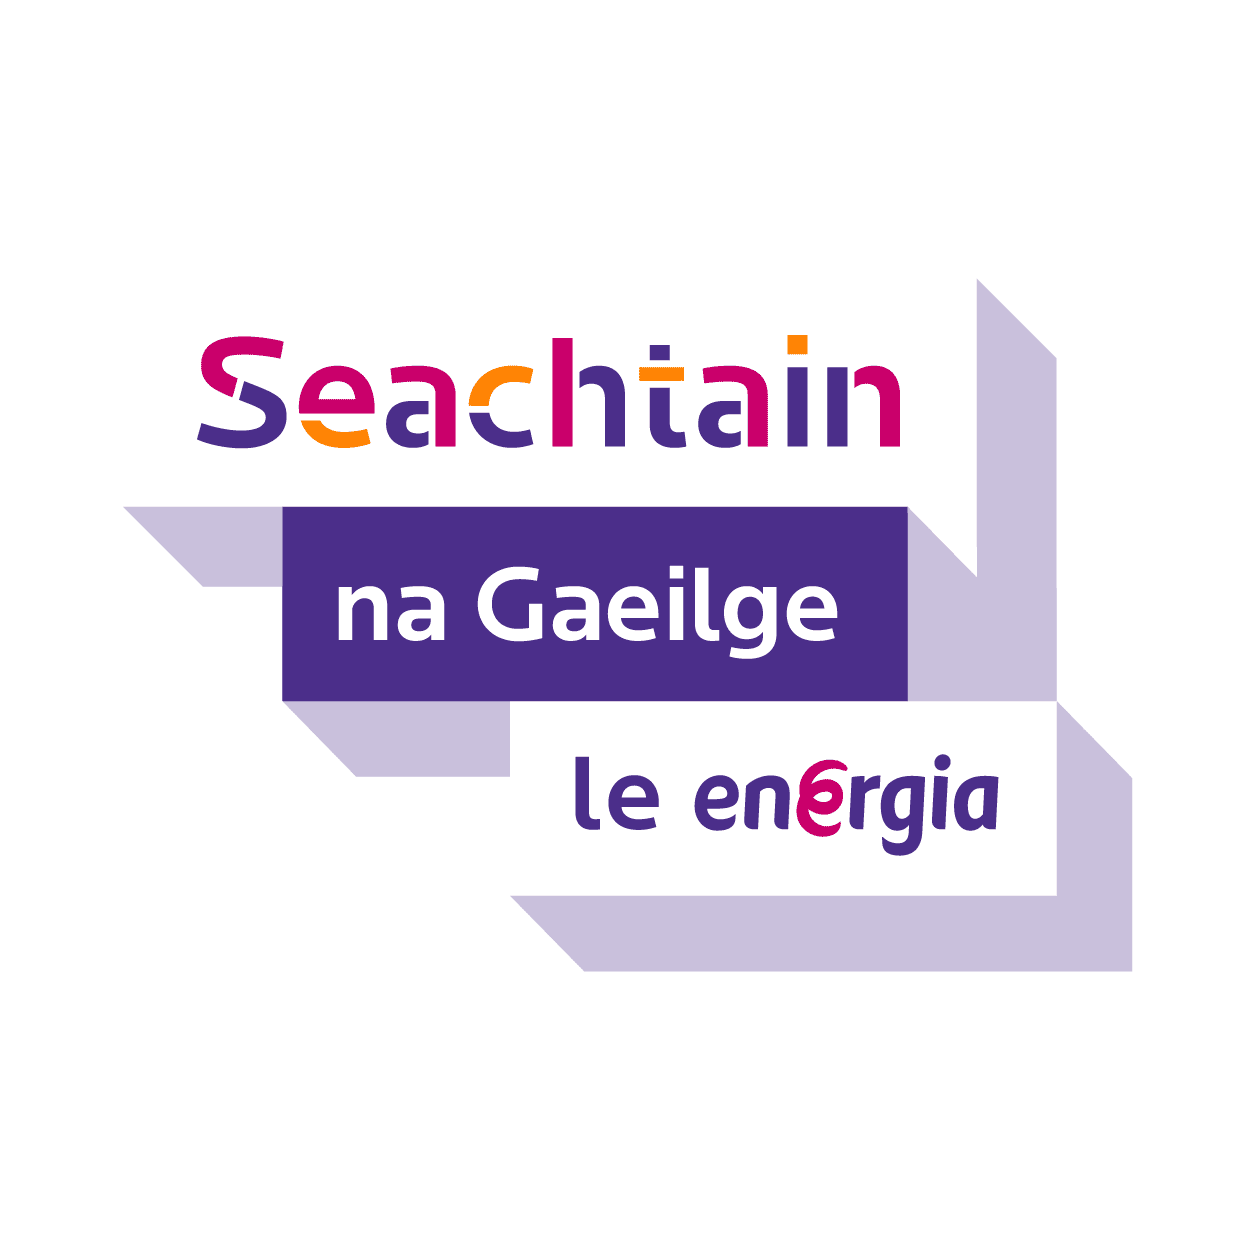 Scoil Ghaeilge Bhéal Feirste: Cá bhfuil siad anois? | ‘The Irish School’: Where are they now?